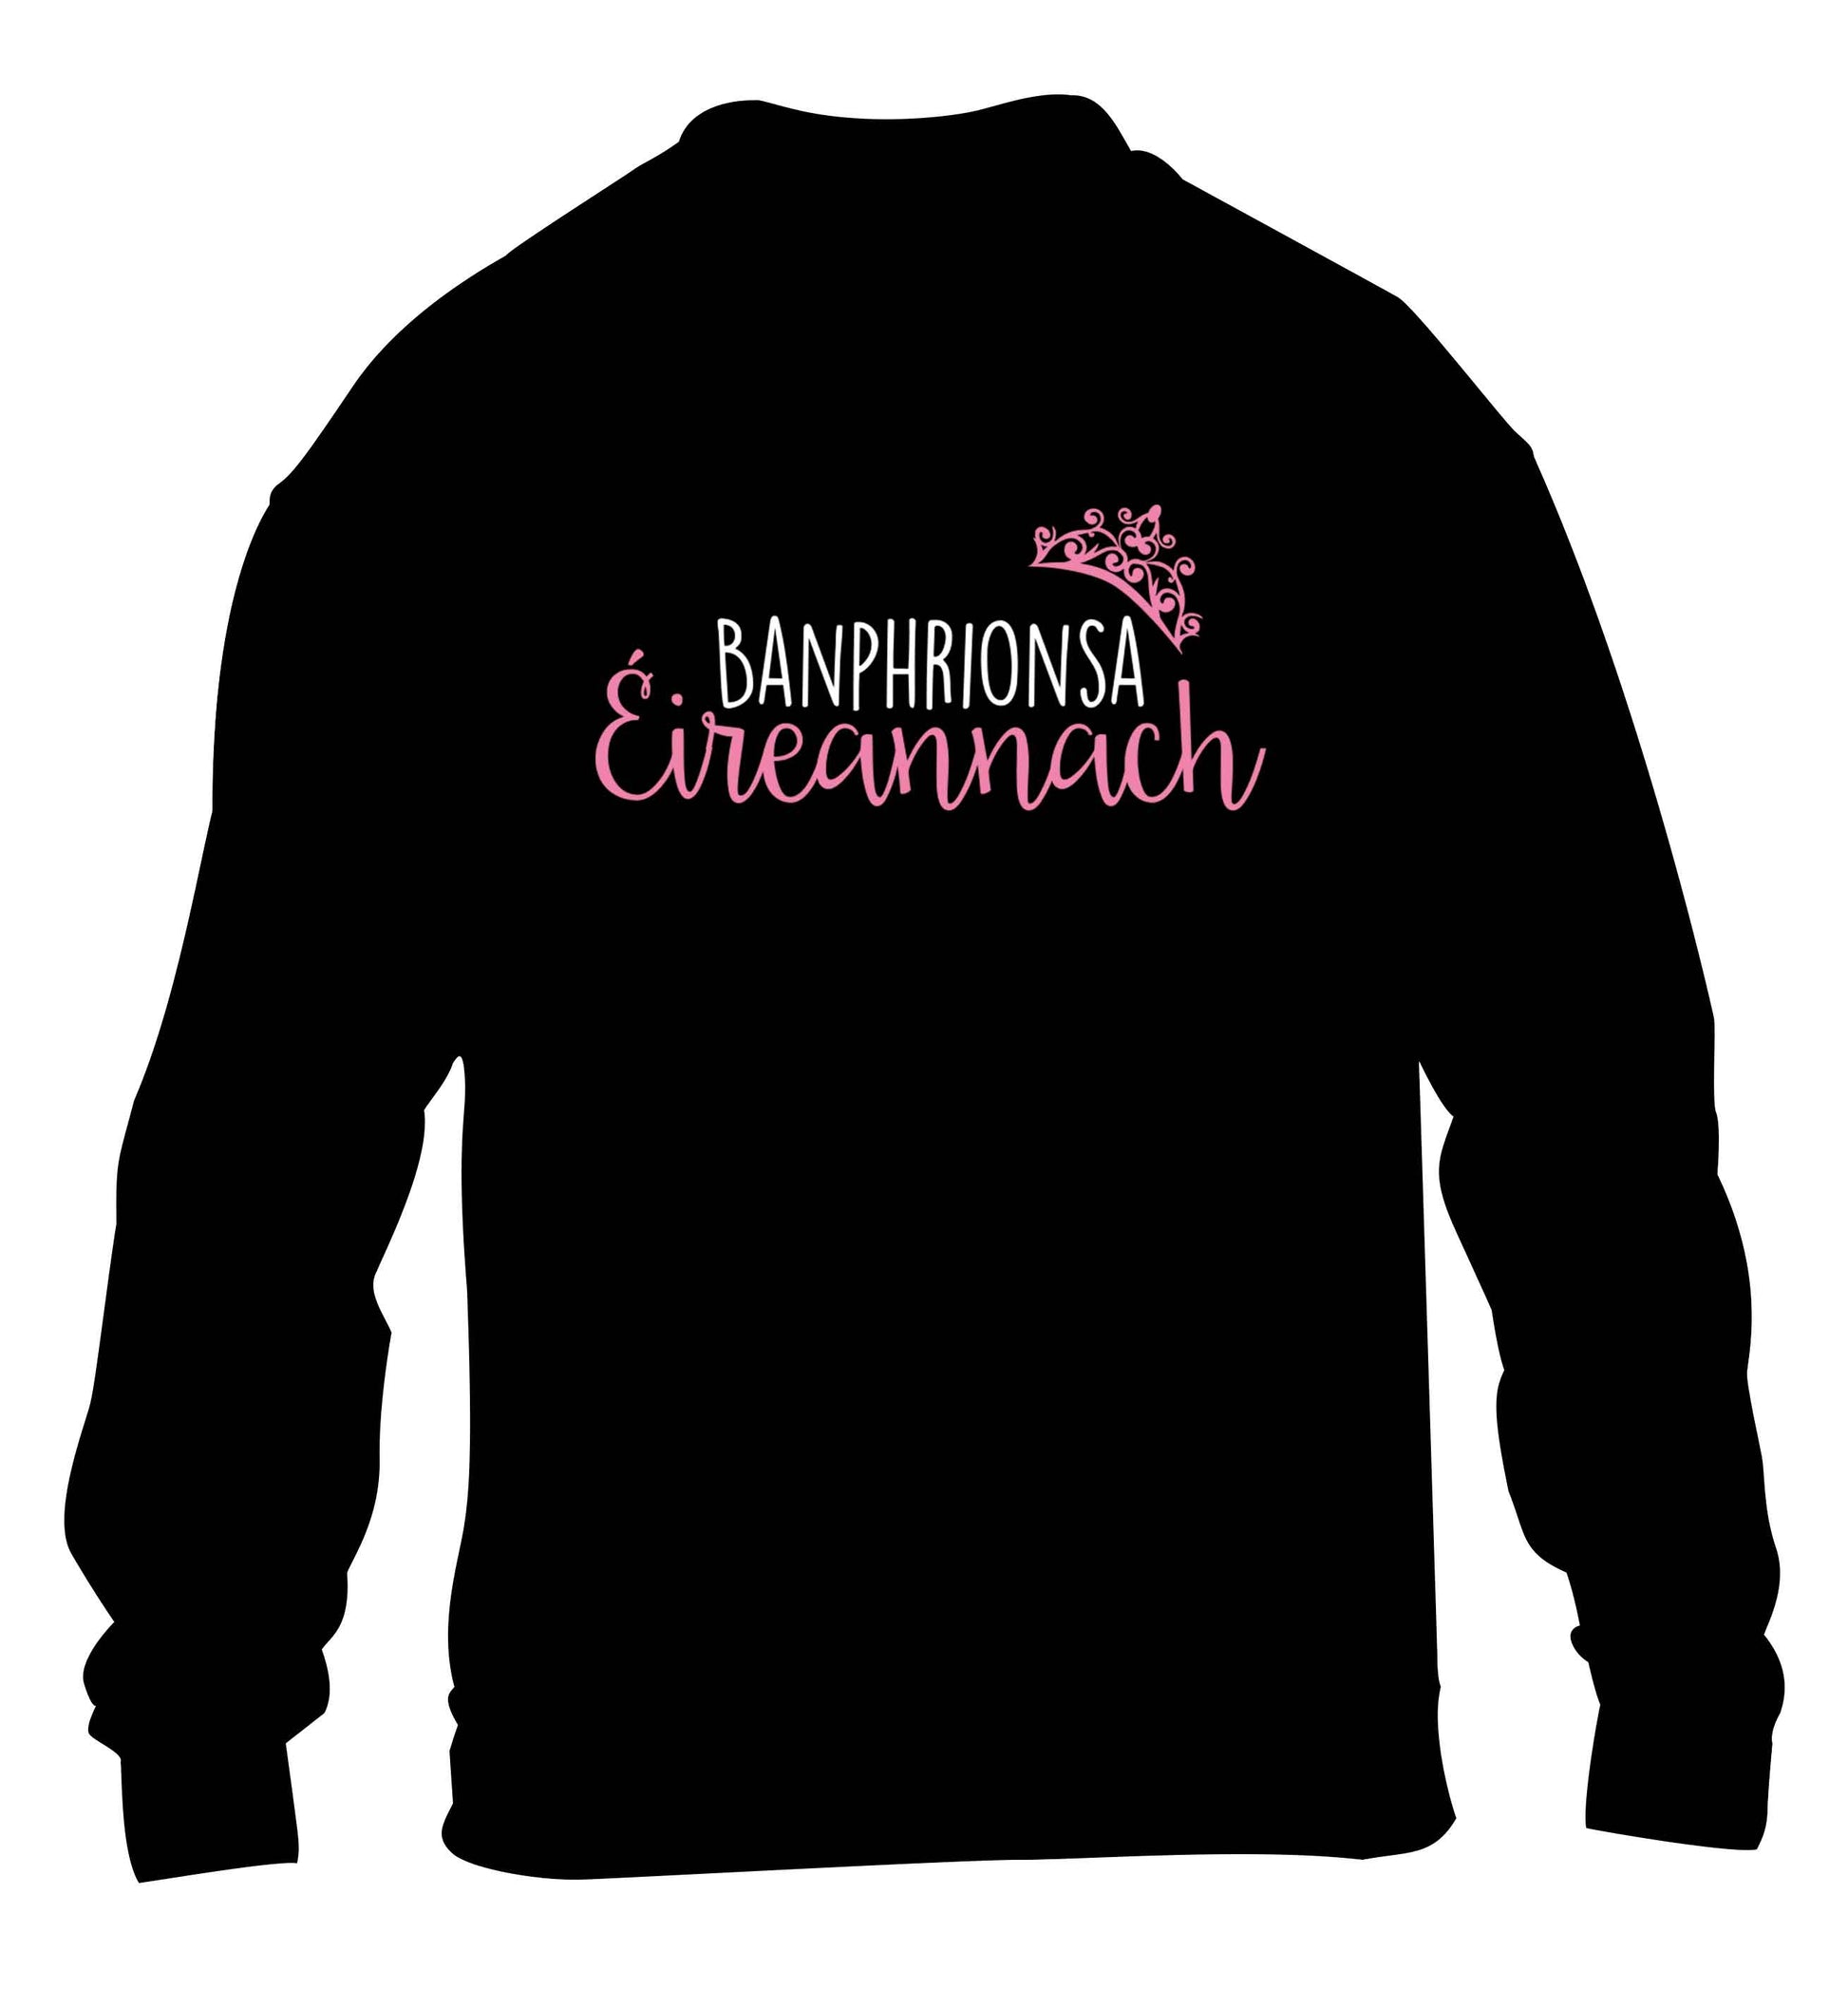 Banphrionsa eireannach children's black sweater 12-13 Years